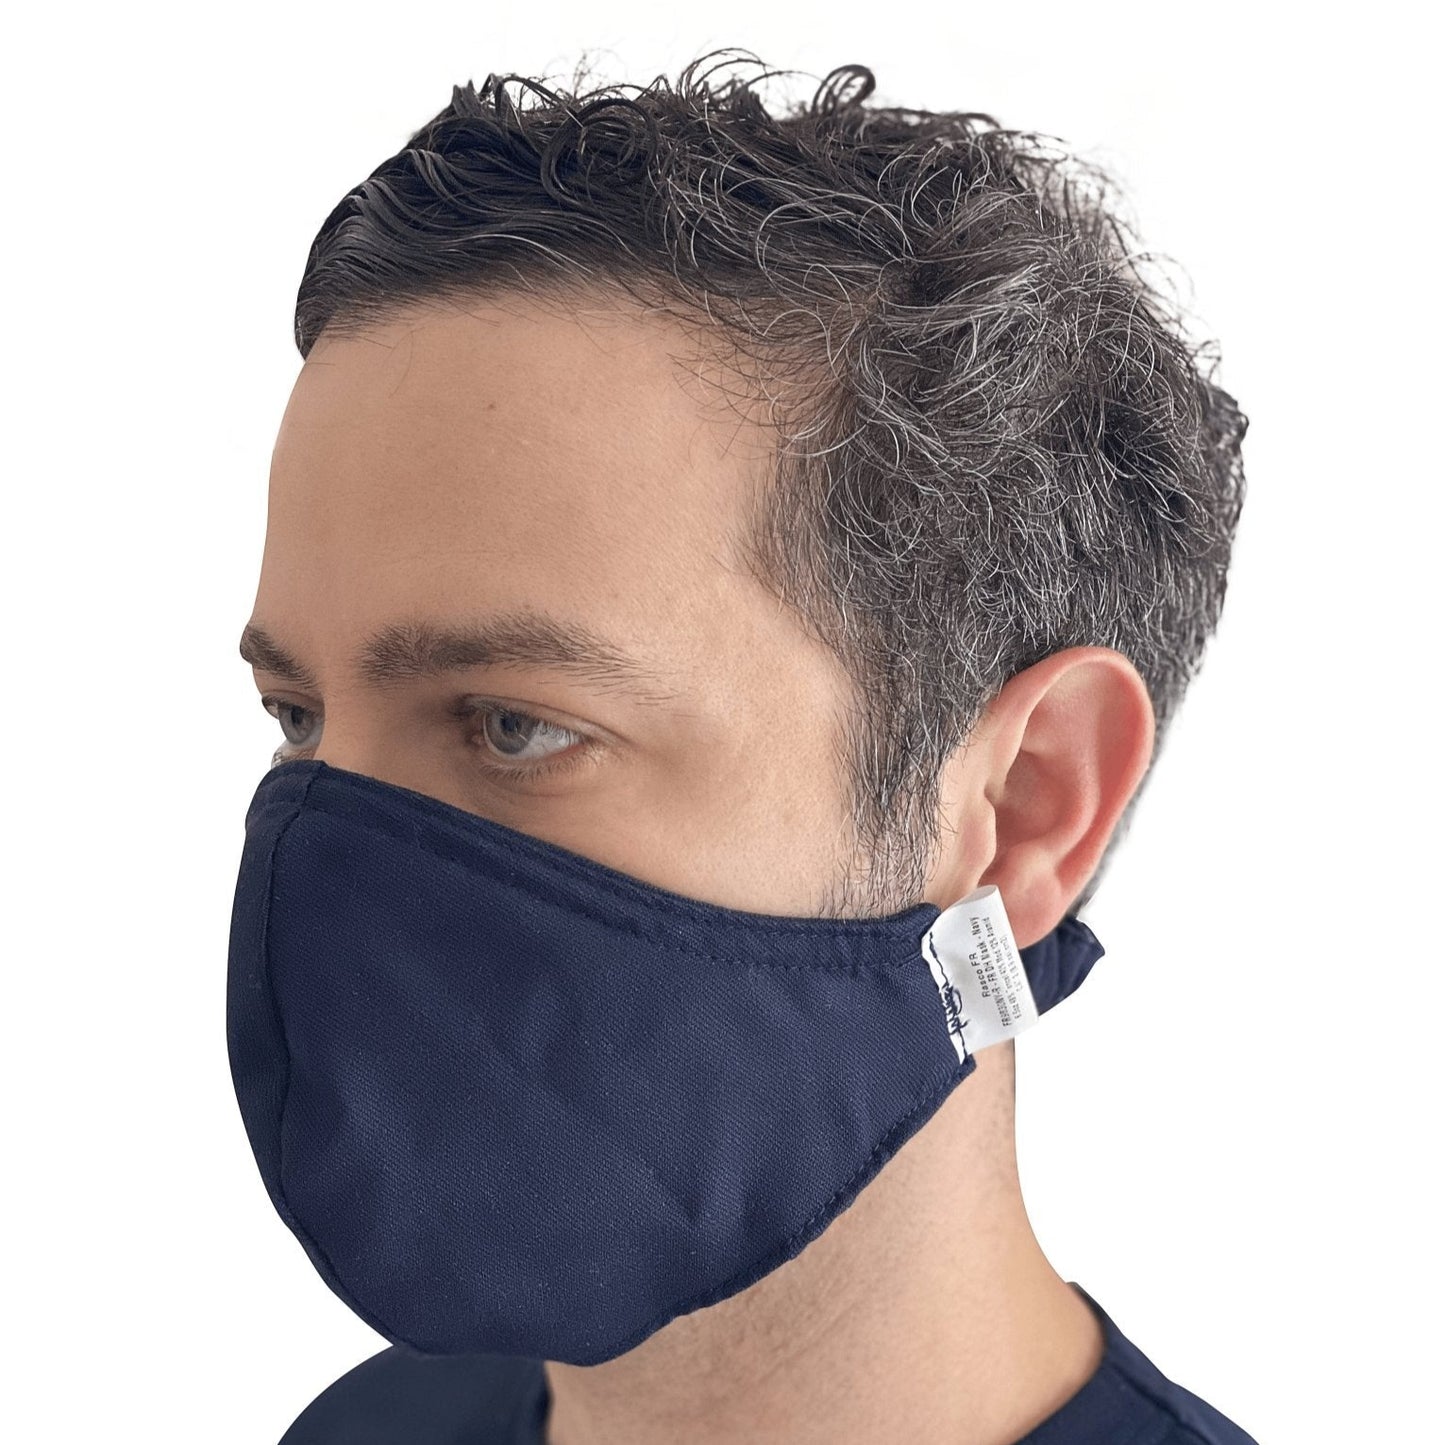 FR Westex® DH Face Mask (CLOSEOUT) - Rasco FR